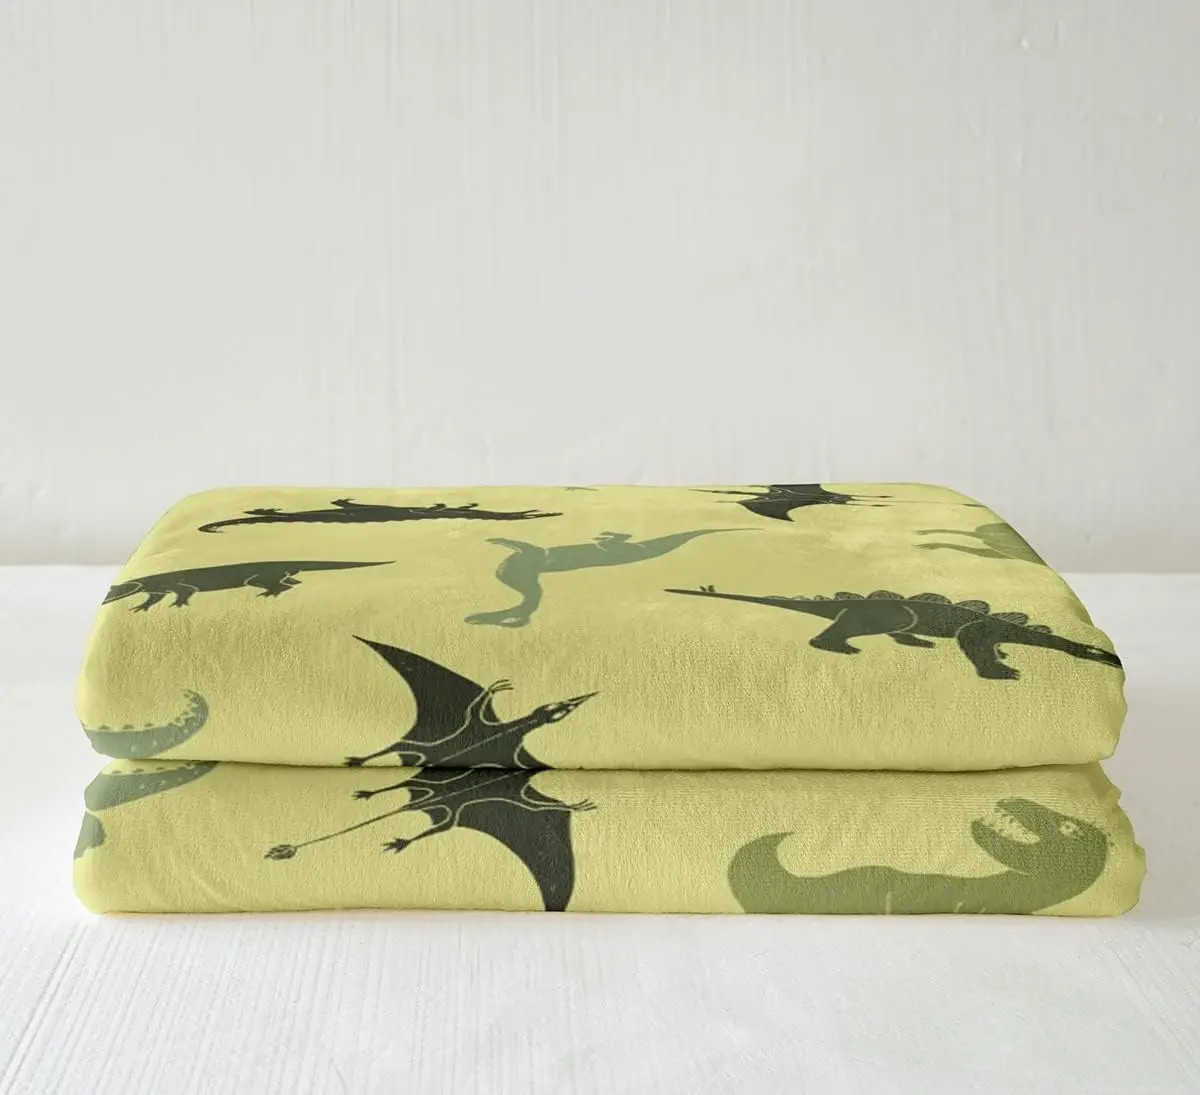 Camo Dinosaur Throw Blanket Армейское зеленое камуфляжное одеяло для кровати для детей, мальчиков, подростков, декор комнаты, дикие животные, флисовое одеяло - 3